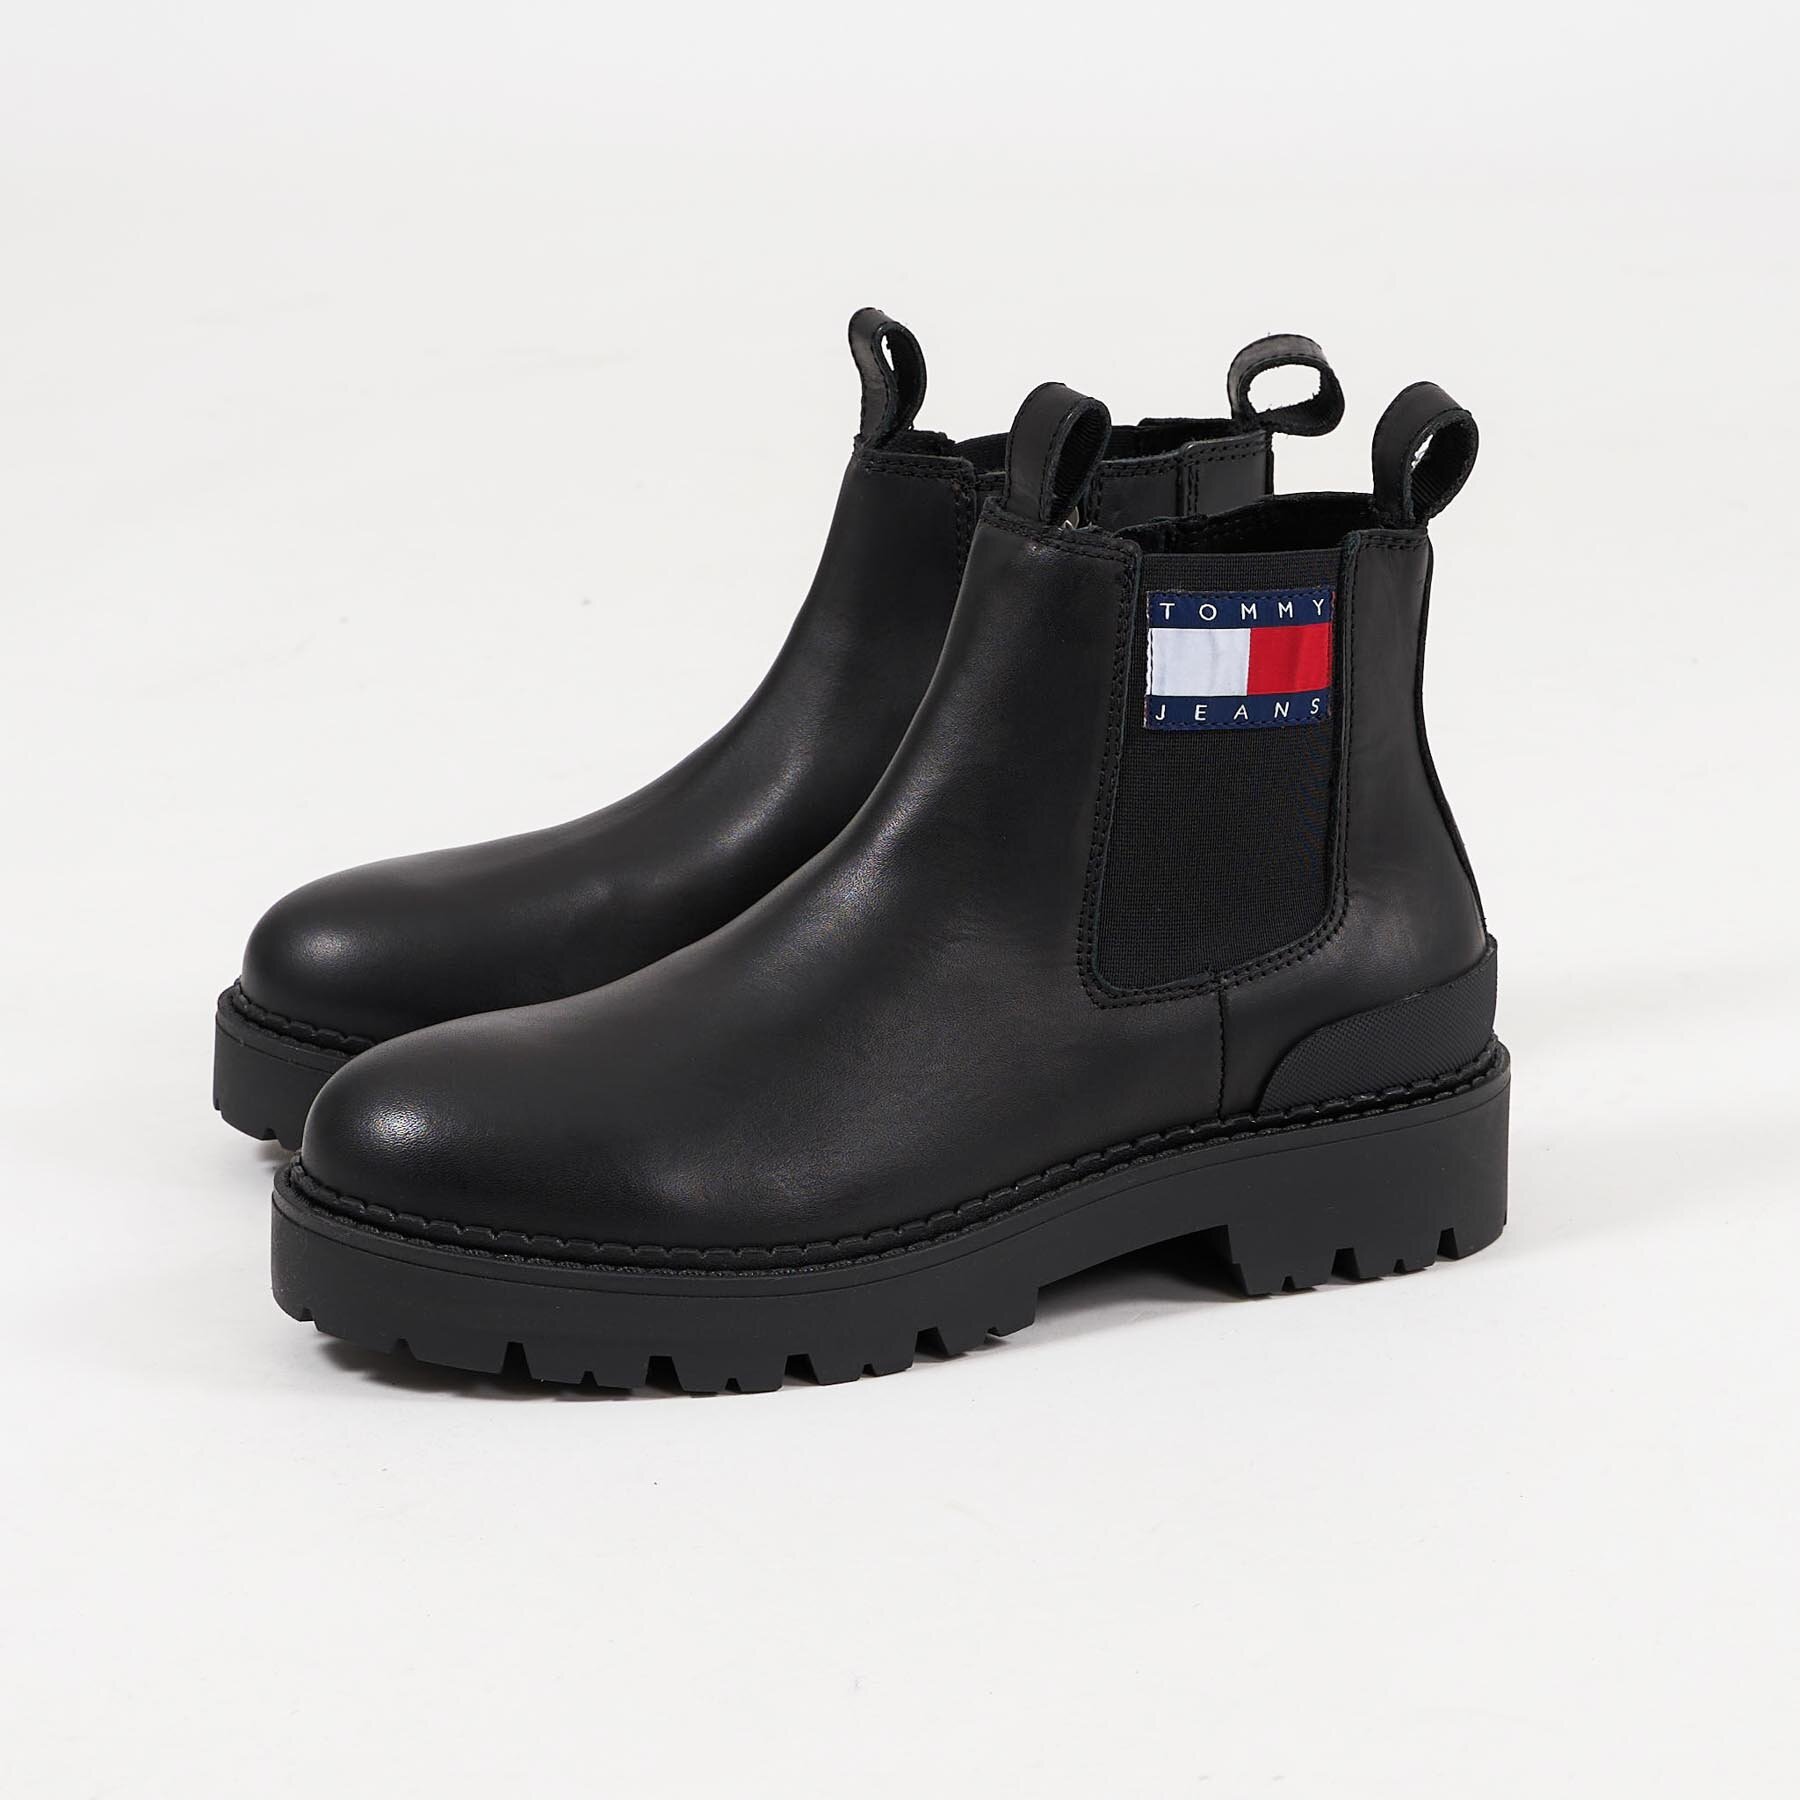 Tommy Hilfiger Shoes - Heritage branding - Sko til herre - Sort 41 Sort male ∙ 800.00 DKK